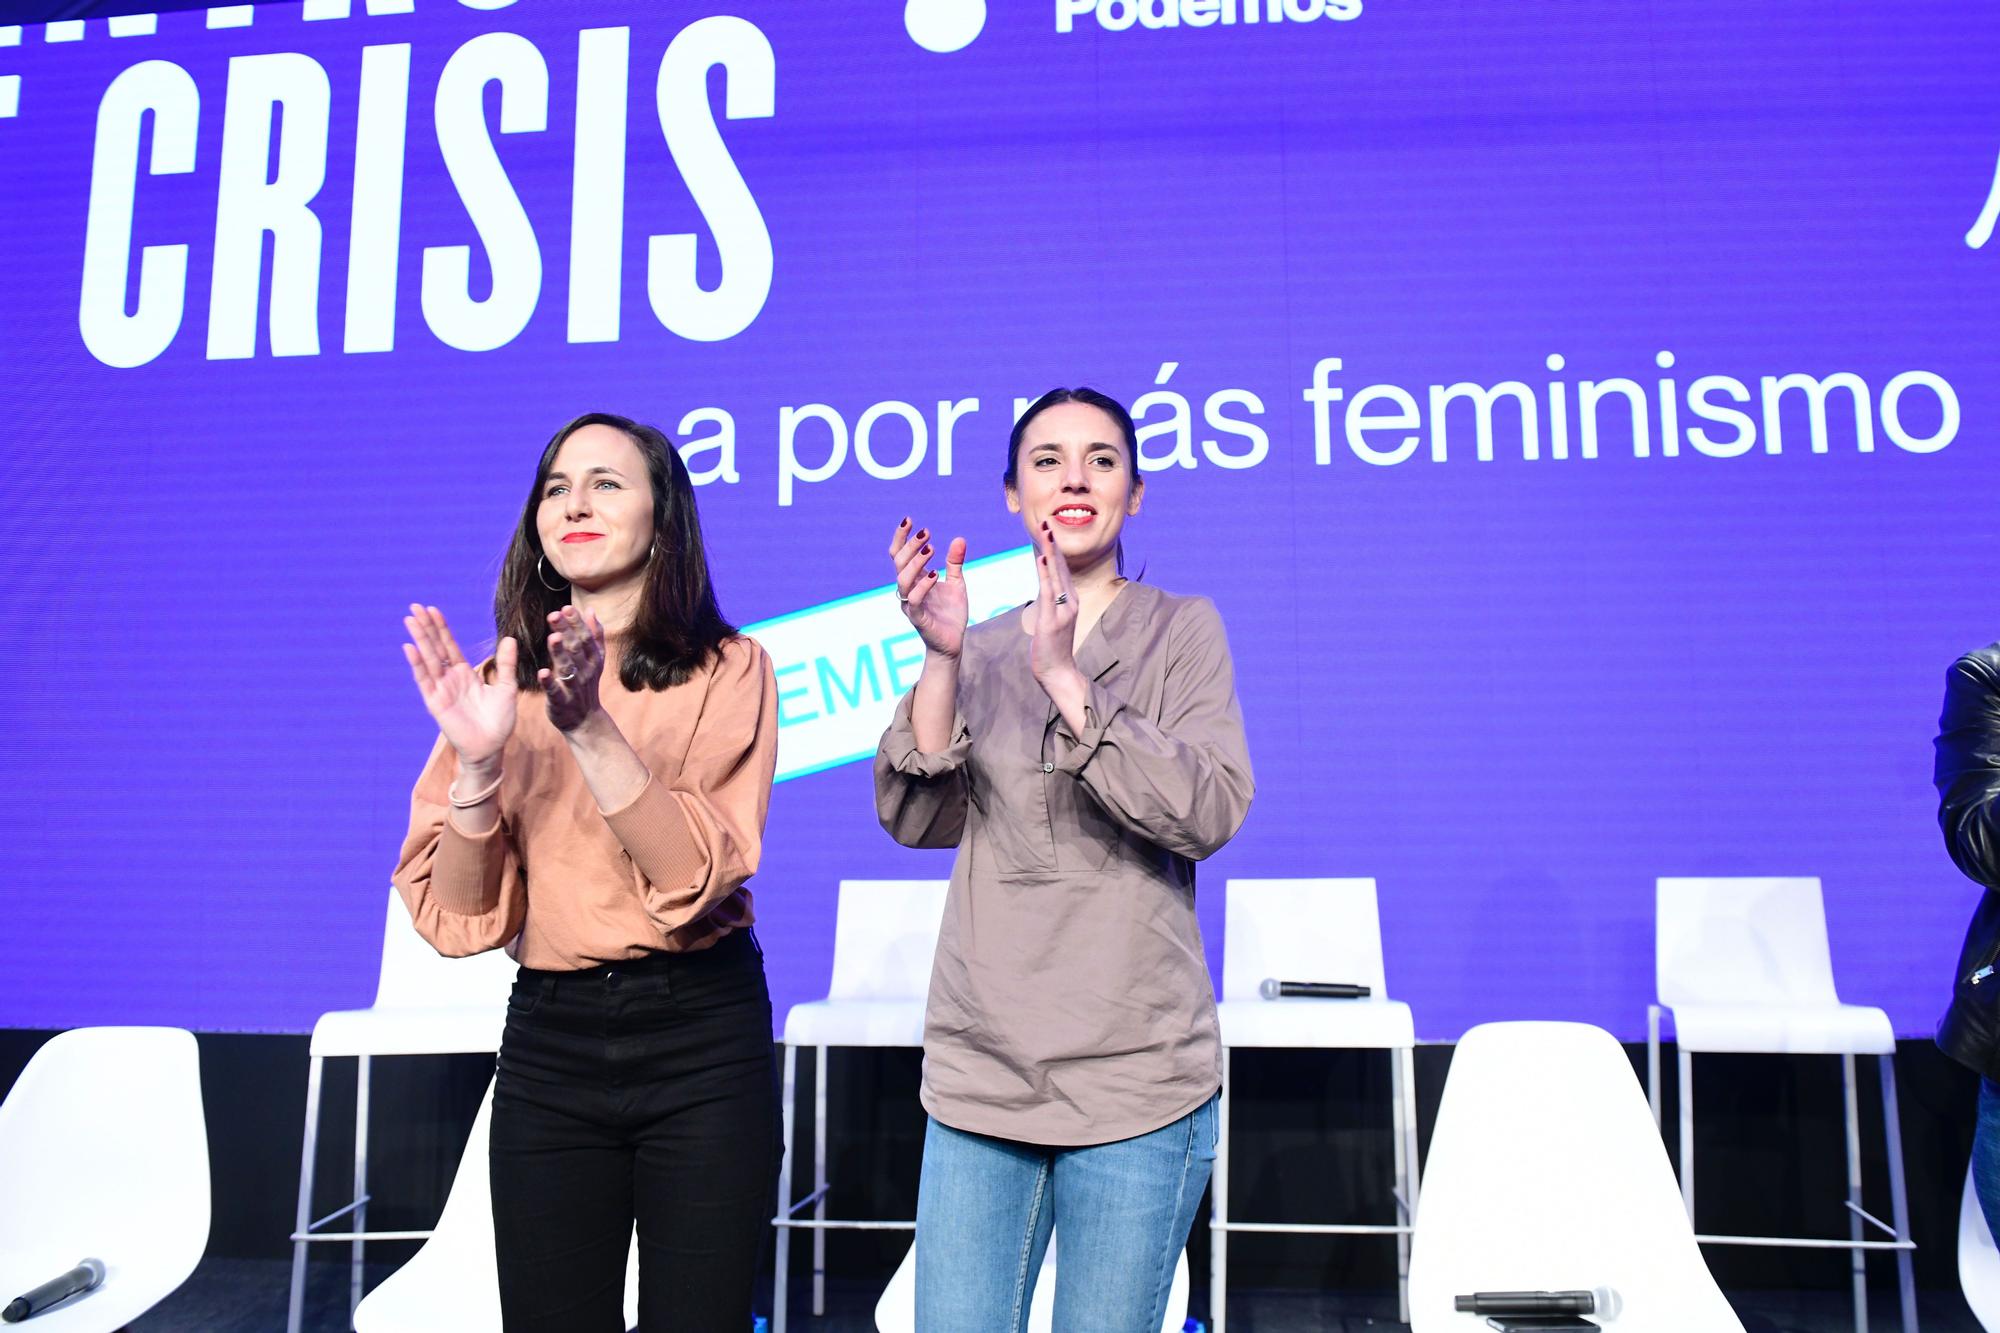 Las ministras Ione Belarra e Irene Montero en un encuentro feminista de Podemos con motivo del Día de la Mujer.